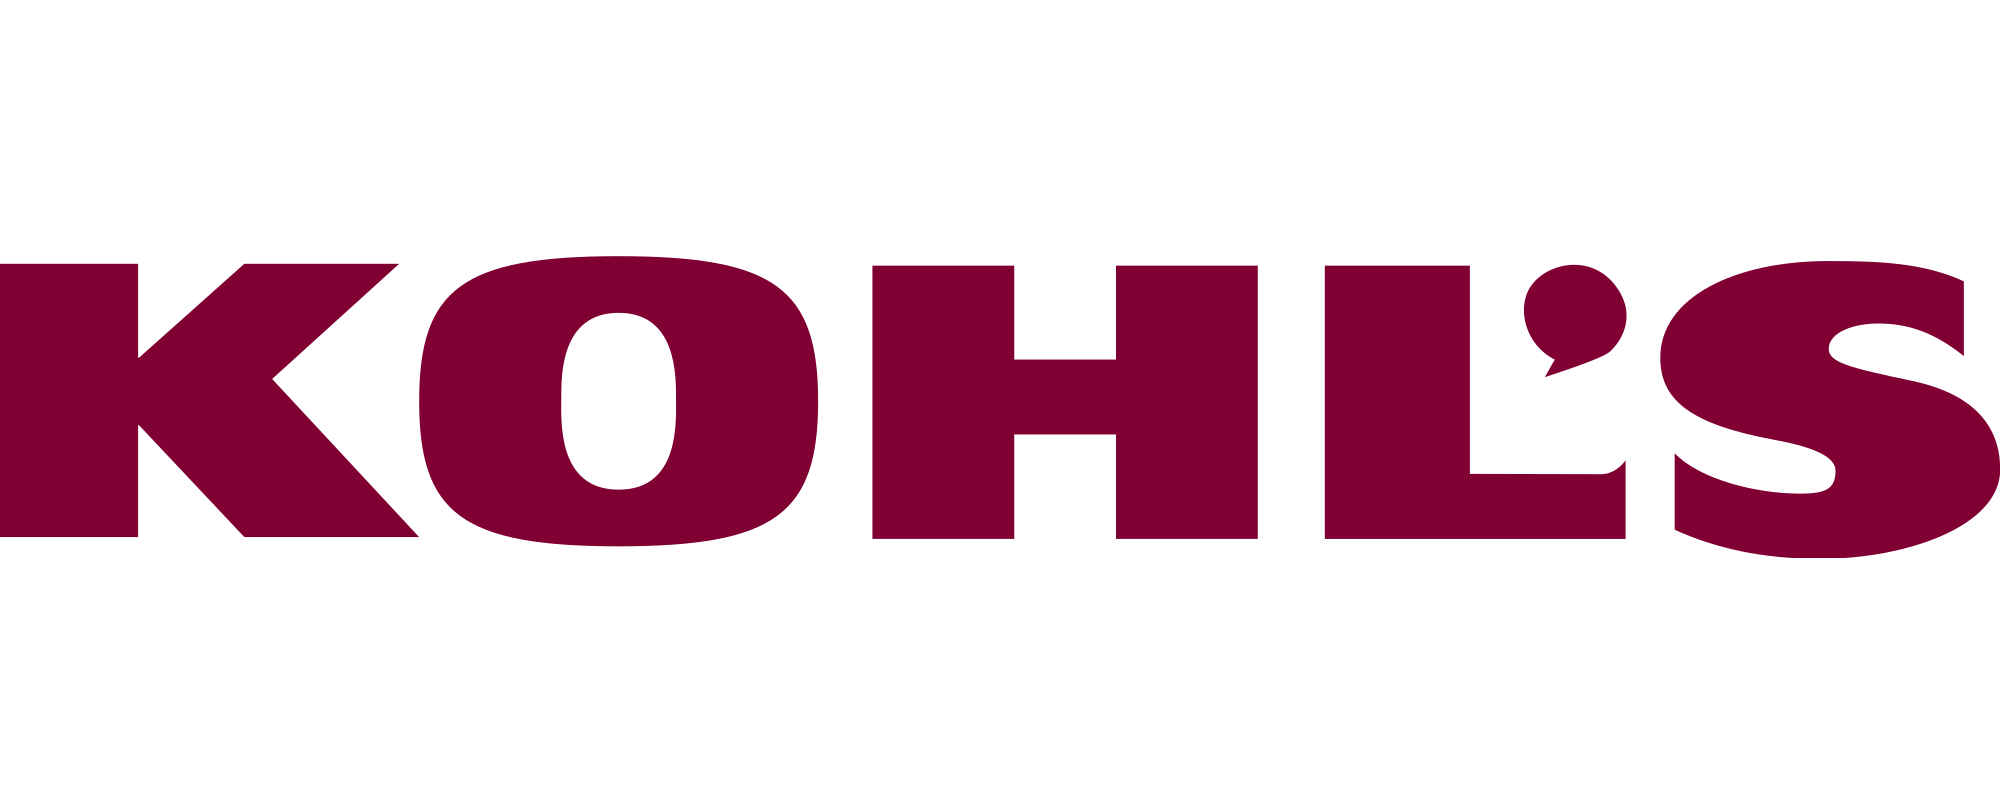 Kohl 'S Logo - Kohl's EDI. EDI & eCommerce Solutions for Kohl's